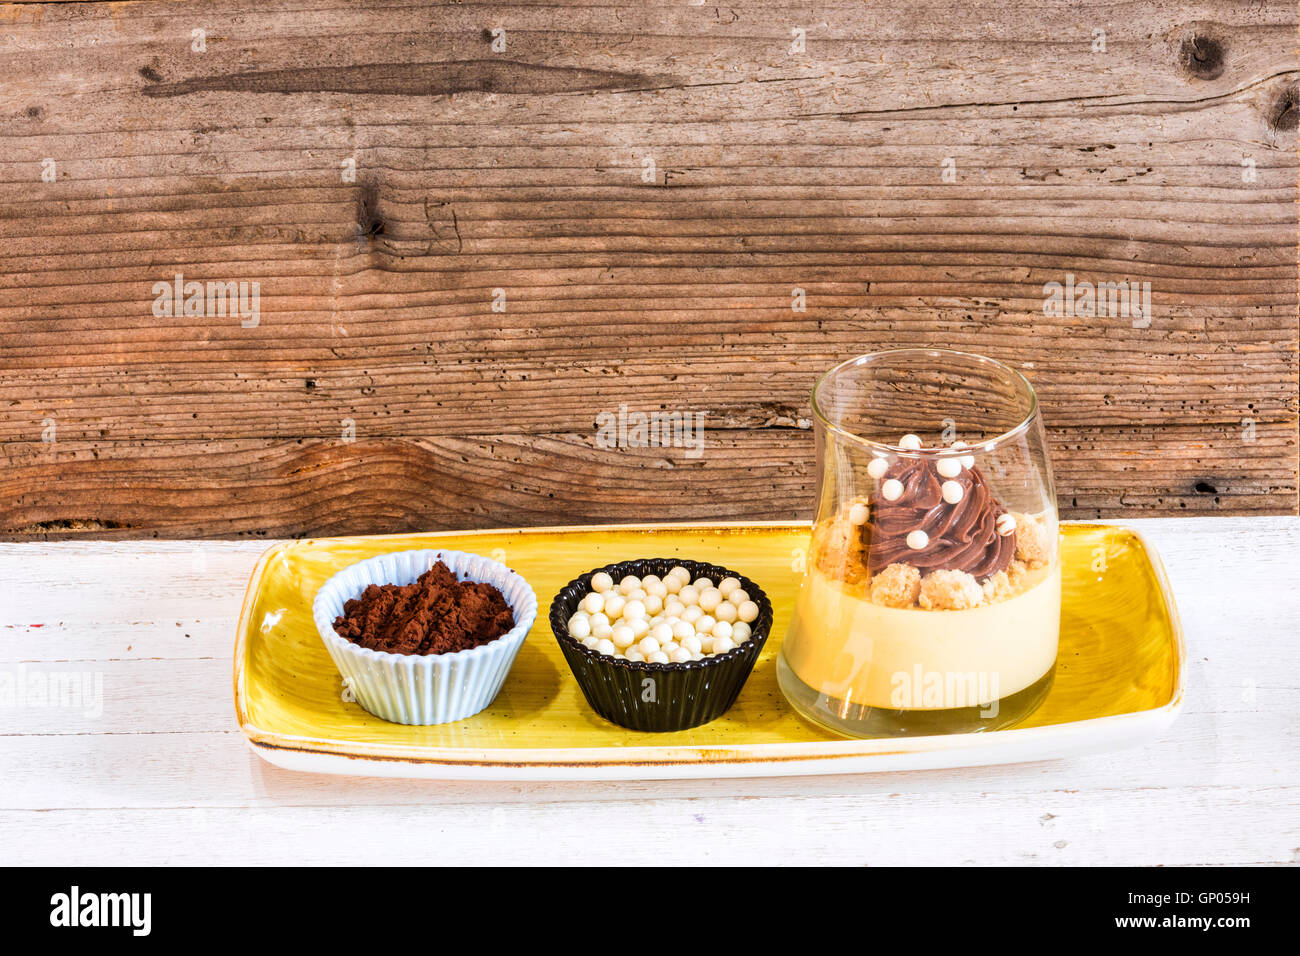 Ein typisches italienisches Dessert mit Schokolade und frischen Vanillepudding gemacht Stockfoto